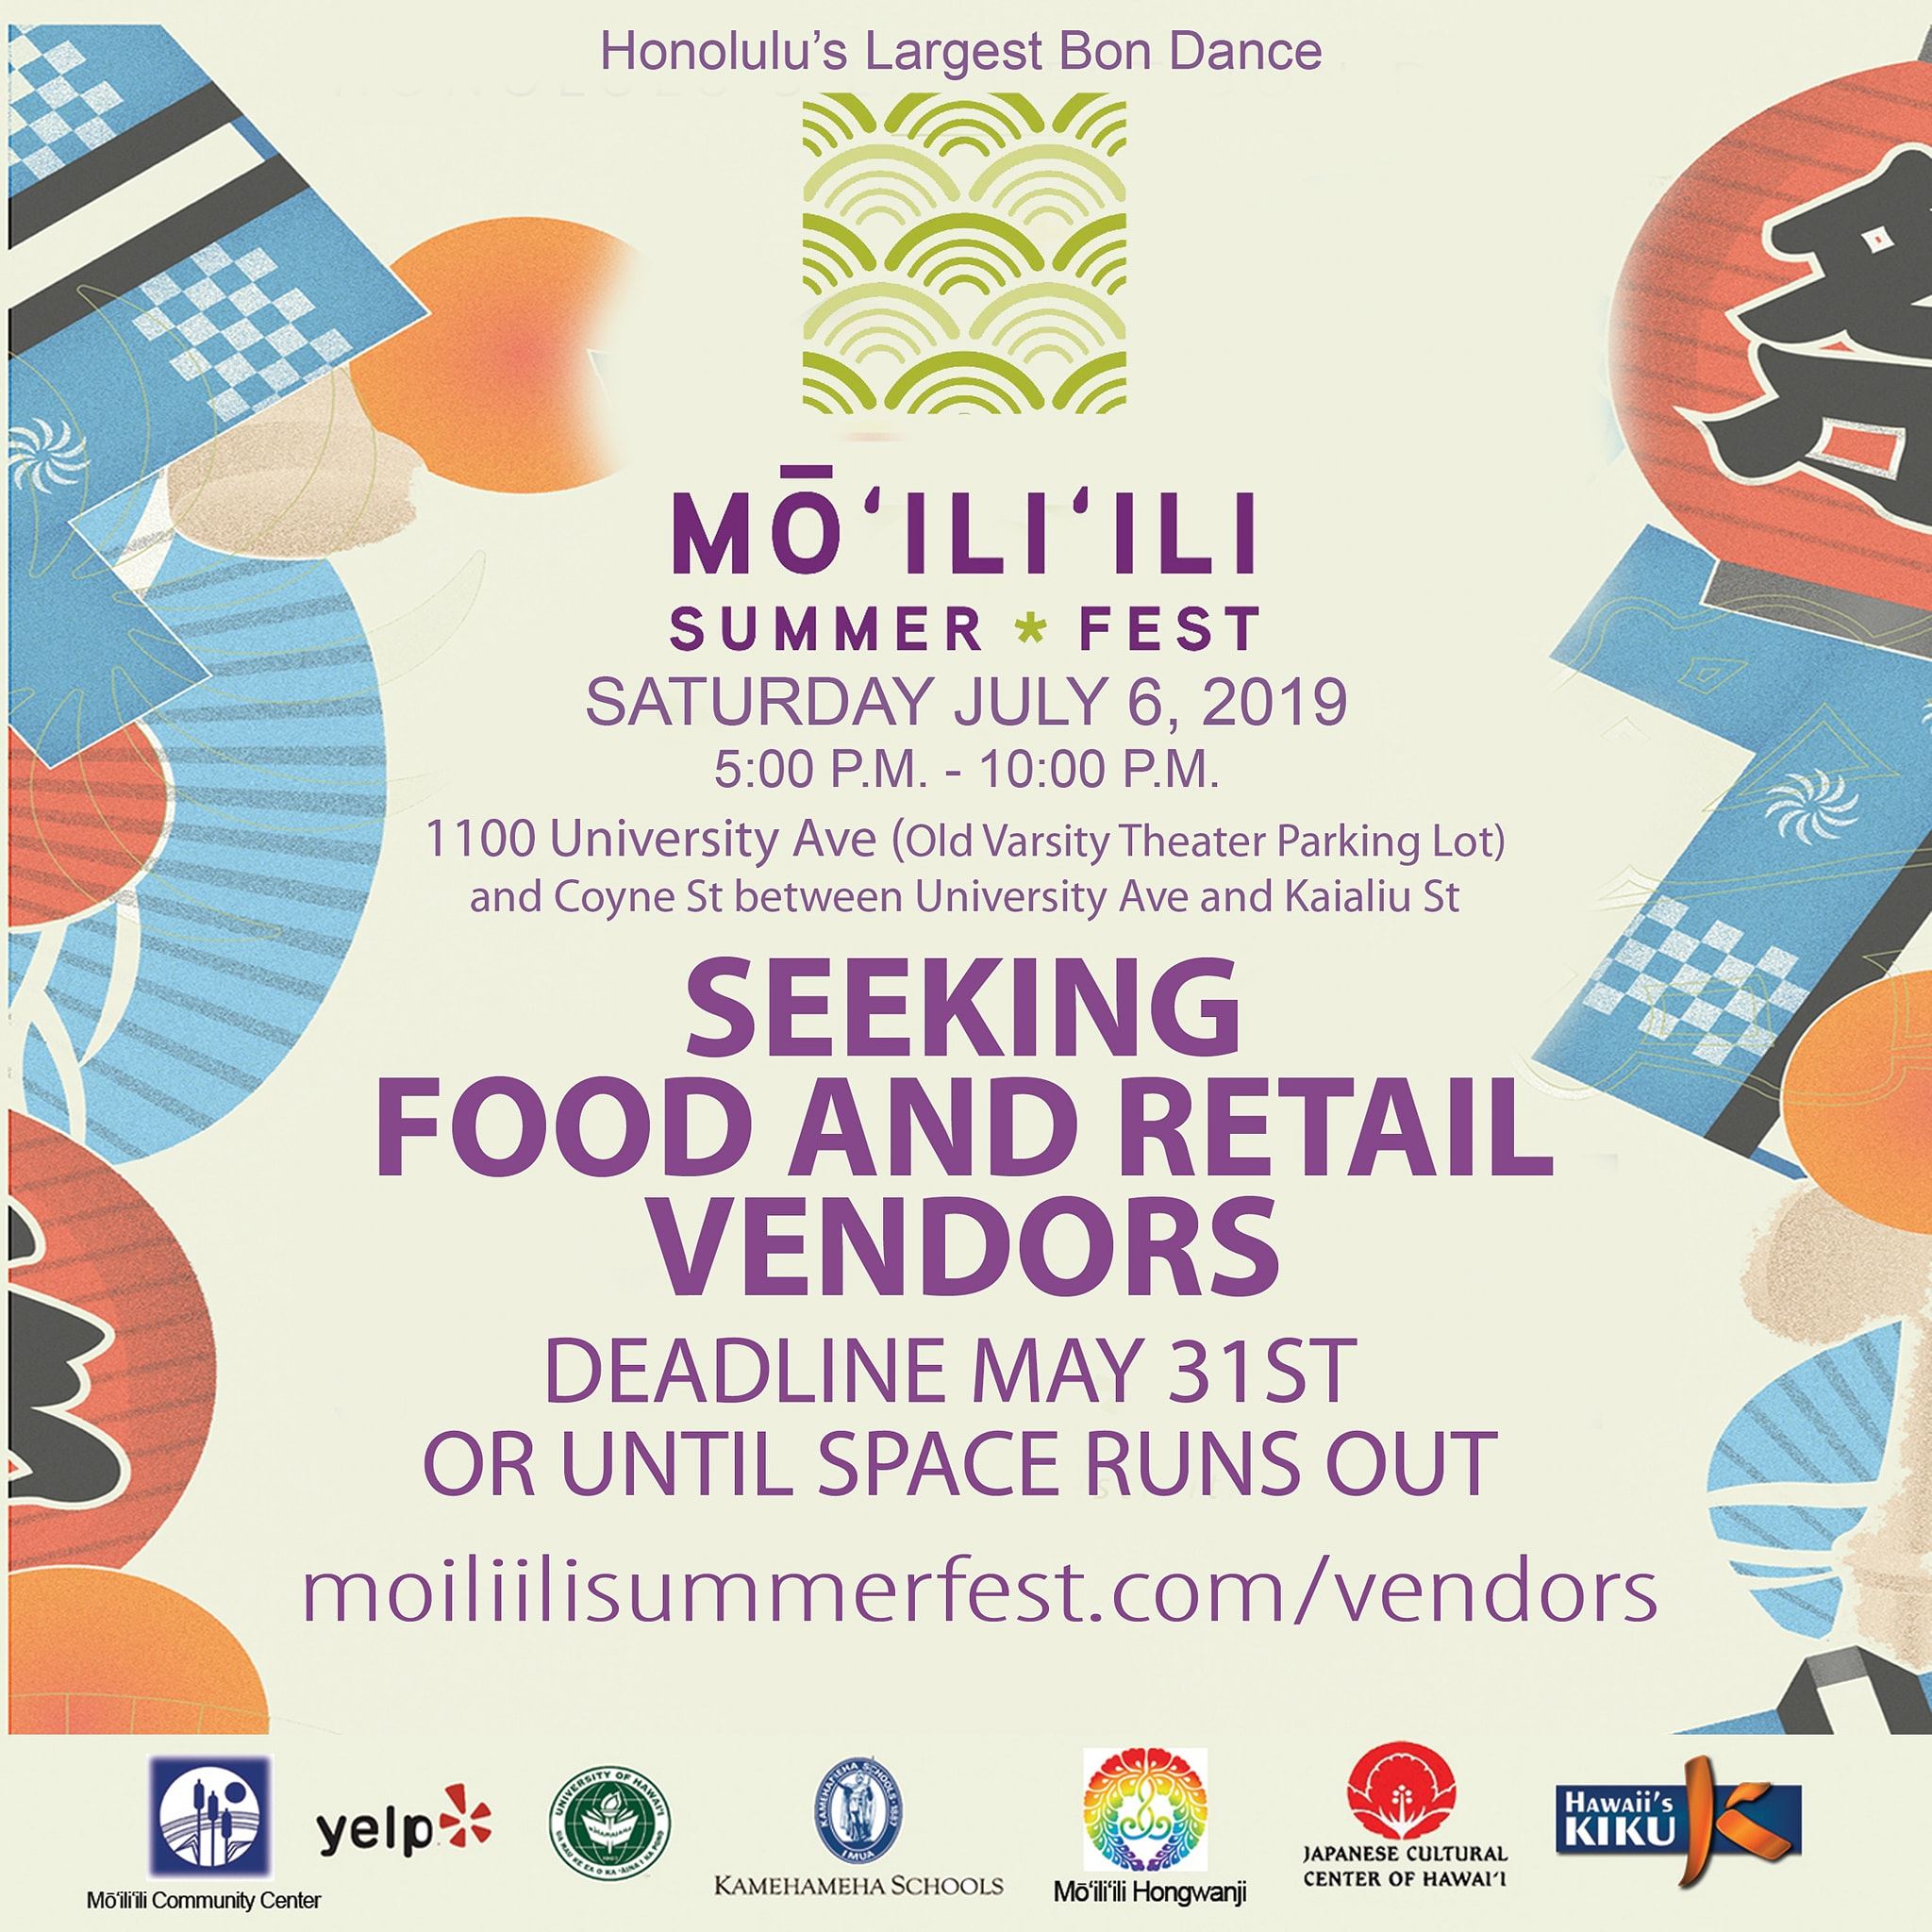 The Mōʻiliʻili Summer Fest